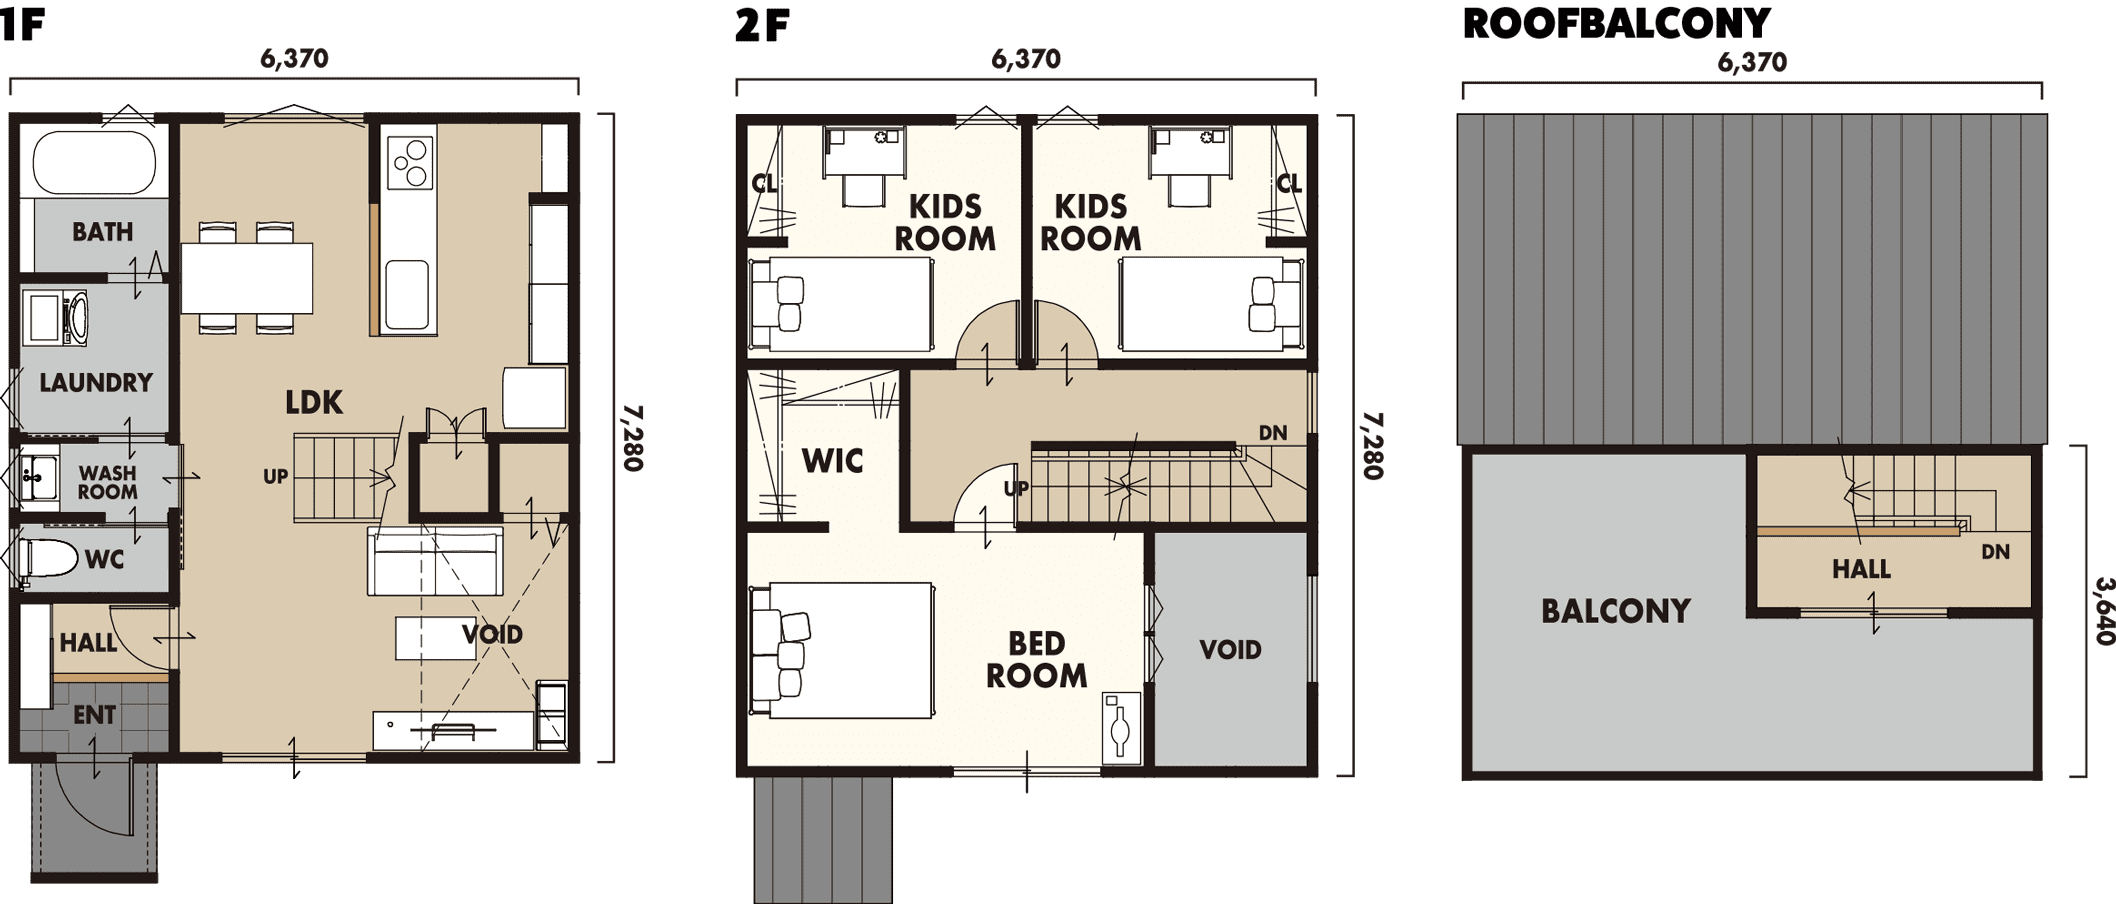 安城市のローコスト住宅「growth」3LDK+ ROOF BALCONY 間取り図